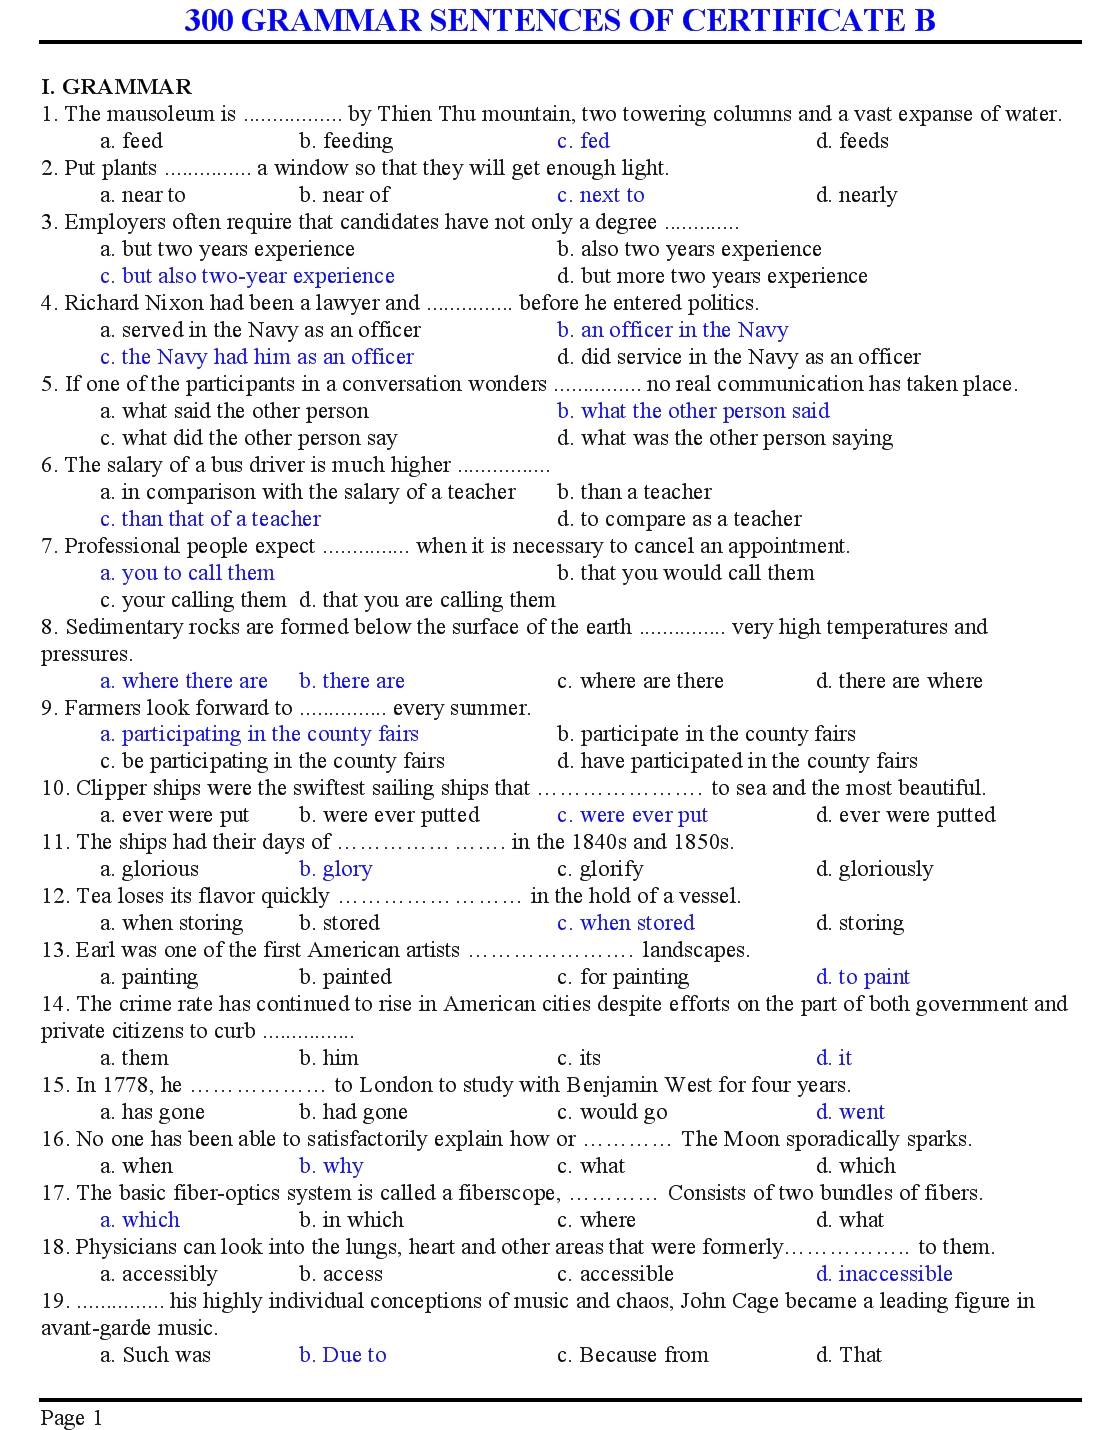 300 grammar sentences of certificate b trang 1